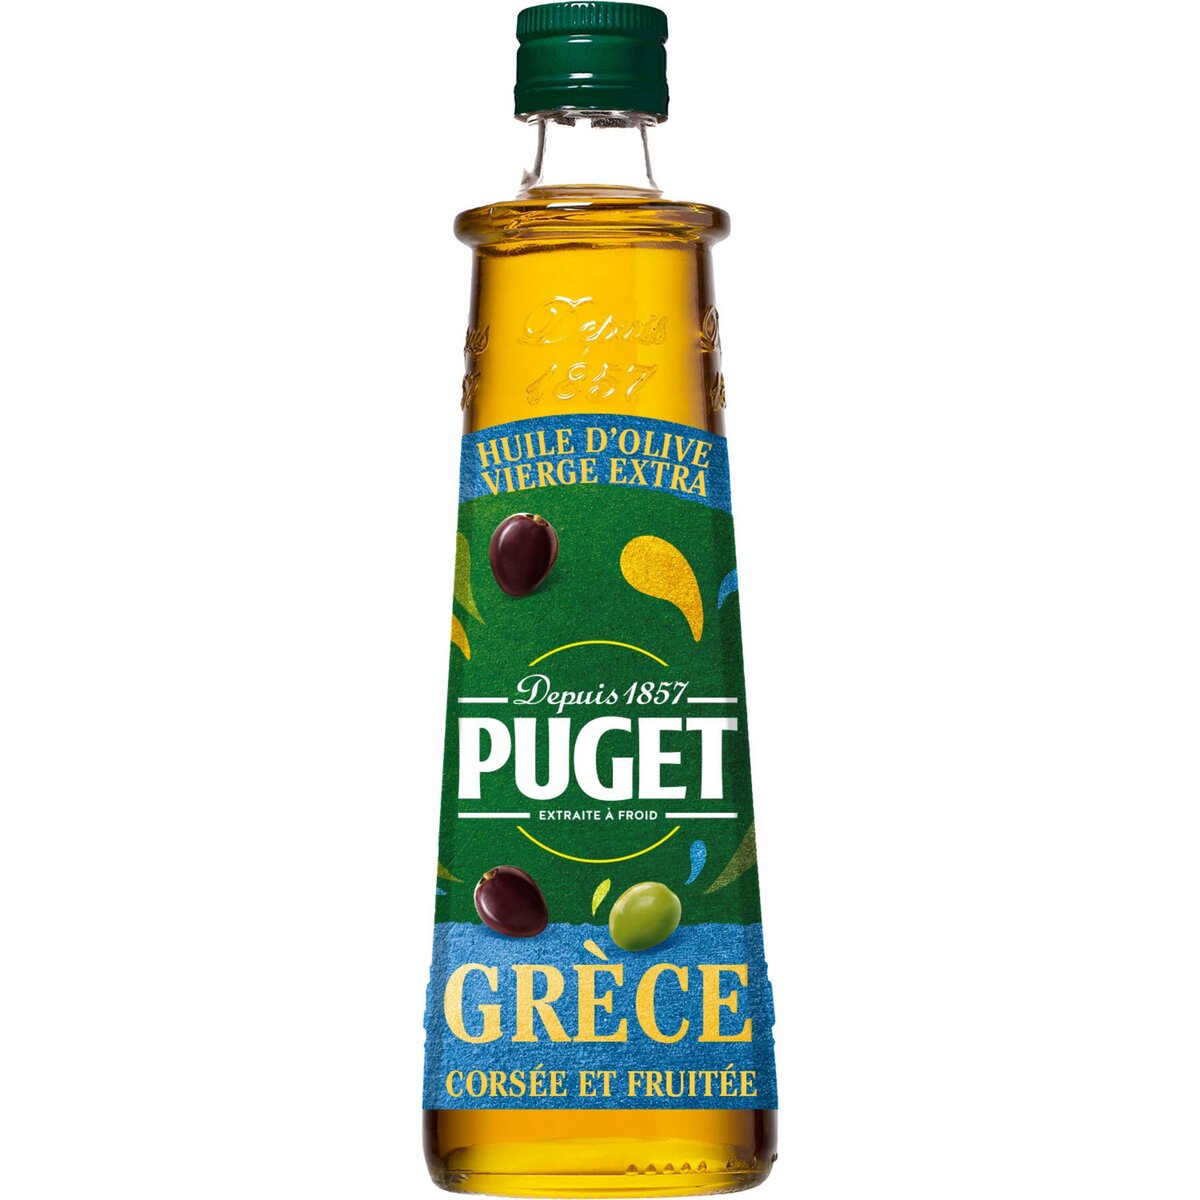 PUGET Huile d'olive vierge extra corsée et fruitée origine Grèce 50cl